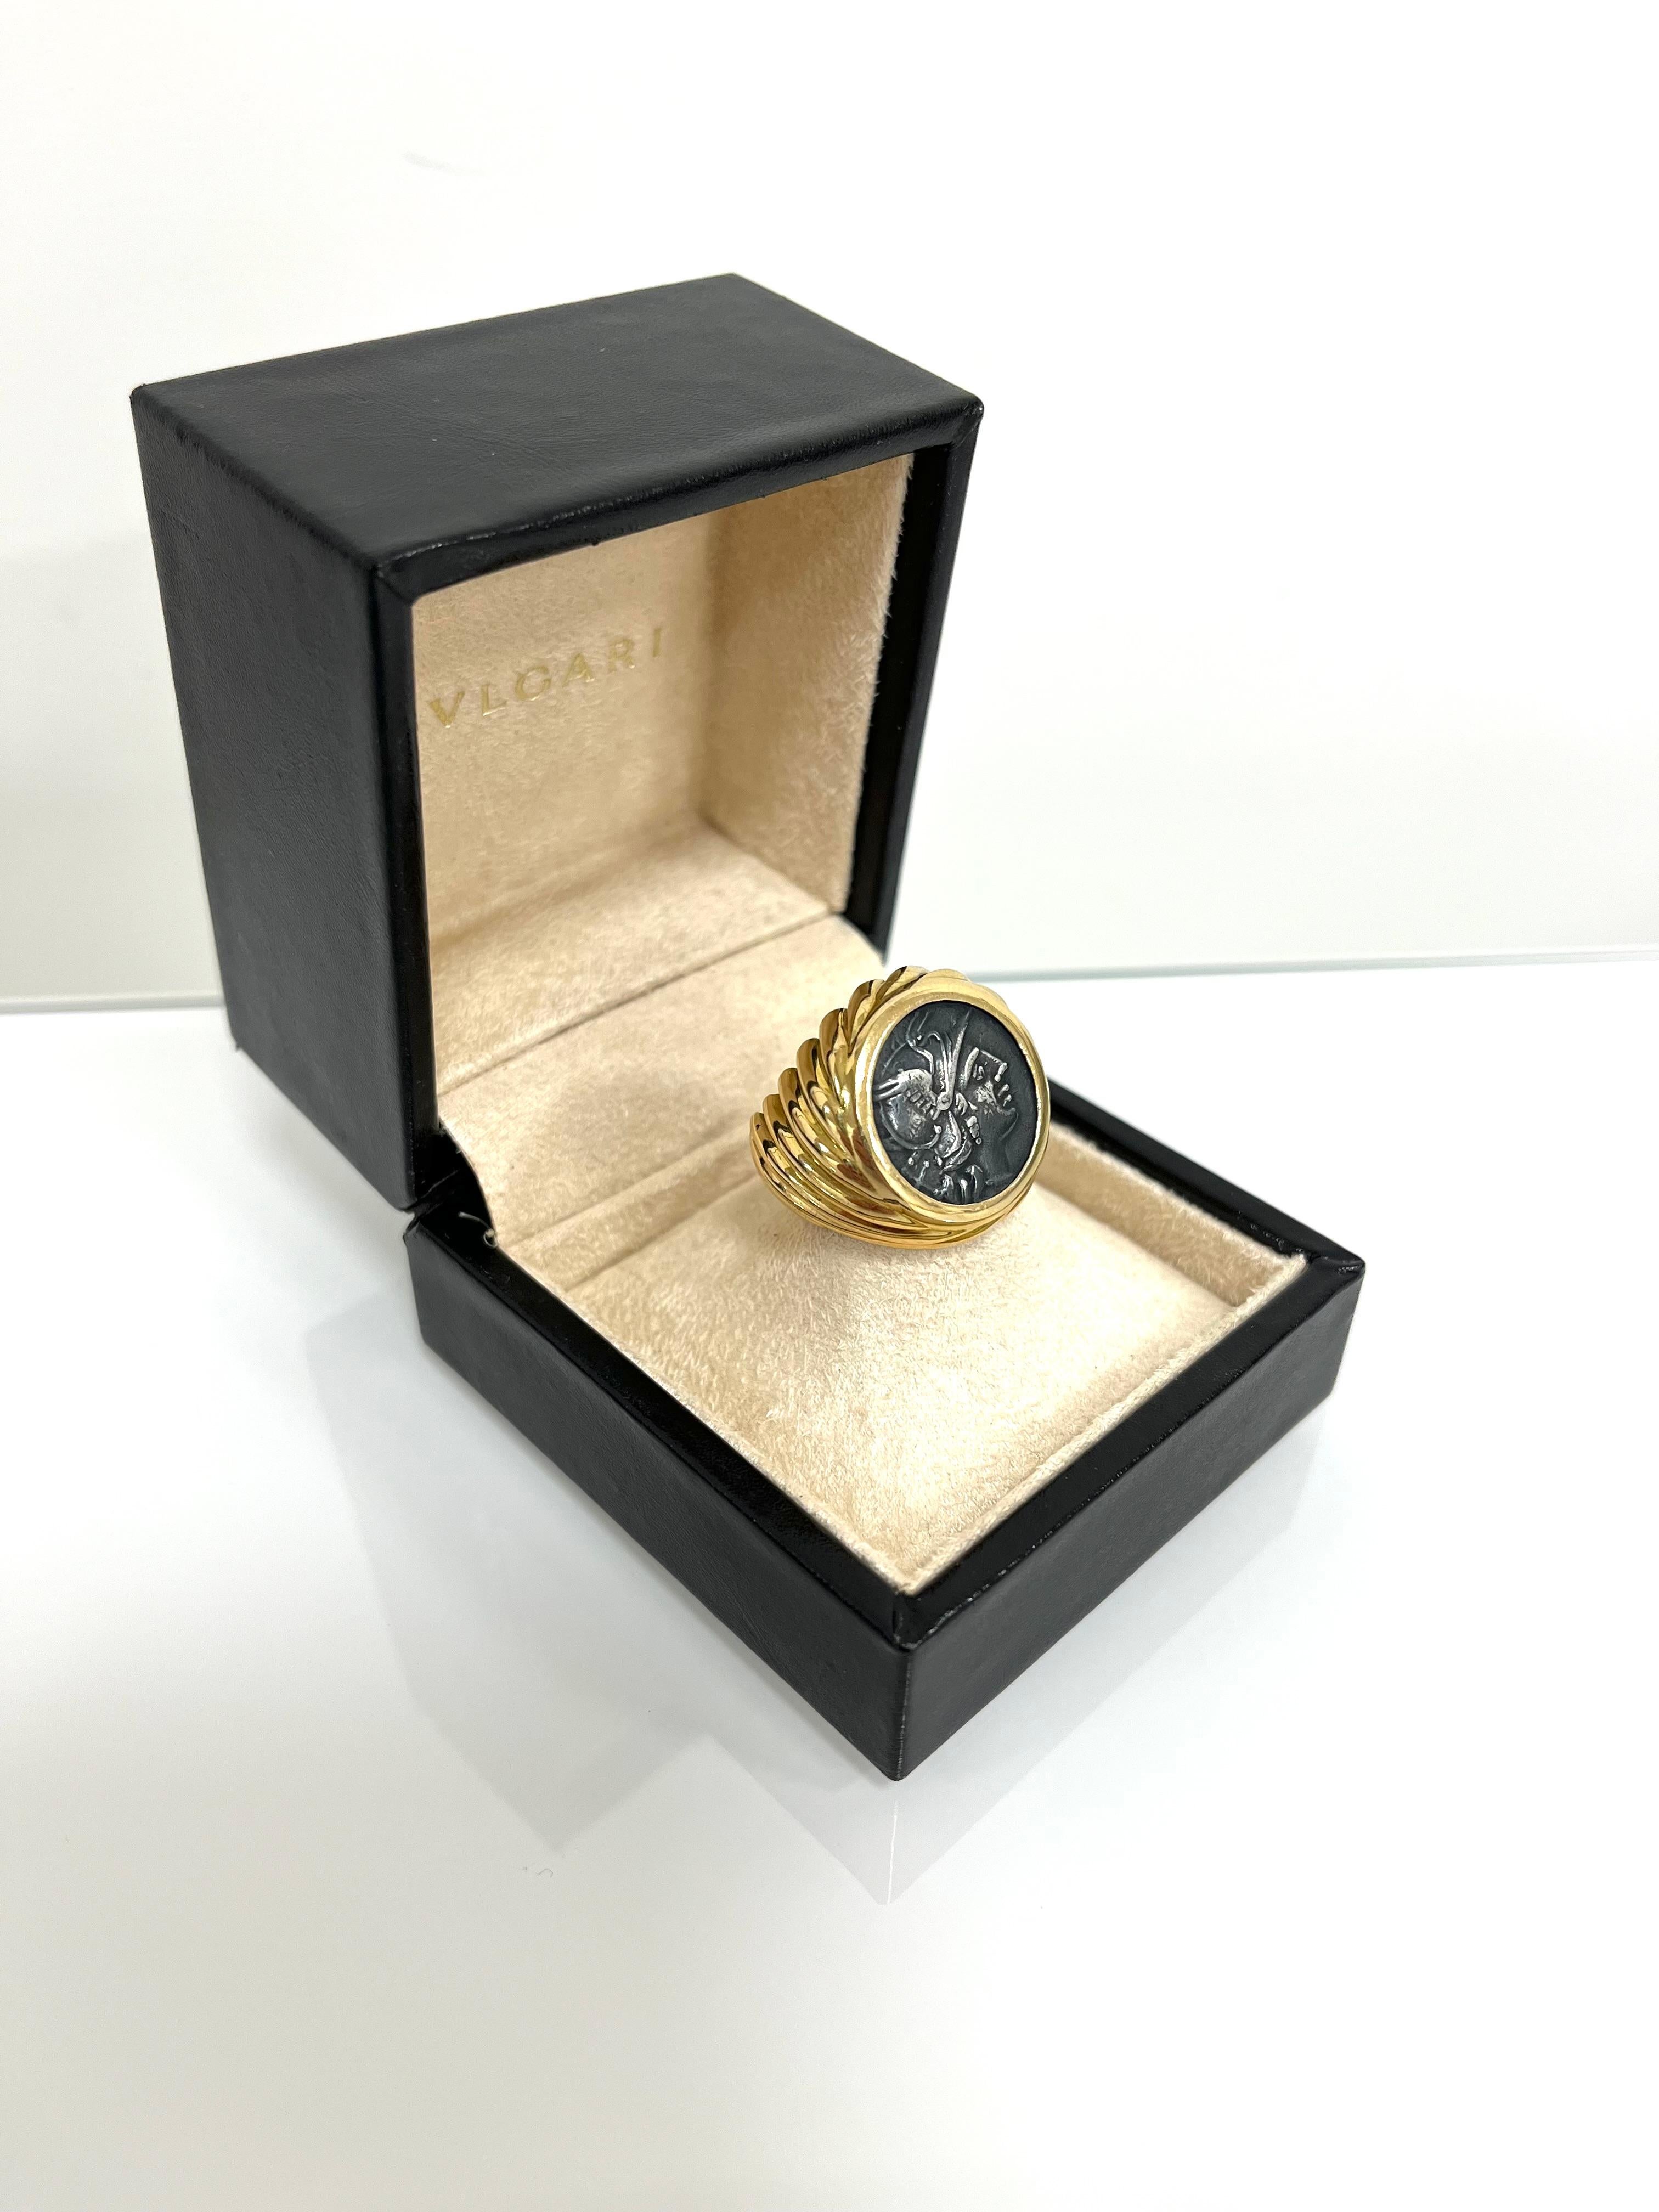 Ring aus 18 kt. Gelbgold mit eingravierter antiker Münze signiert Bulgari.
Dieses schöne Vintage-Stück gehört zur Bulgari Coin Collection.
Der Ring zeigt eine antike Münze aus dem Römischen Reich, auf der ein Bild zu sehen ist:
Vorderseite: Claudius